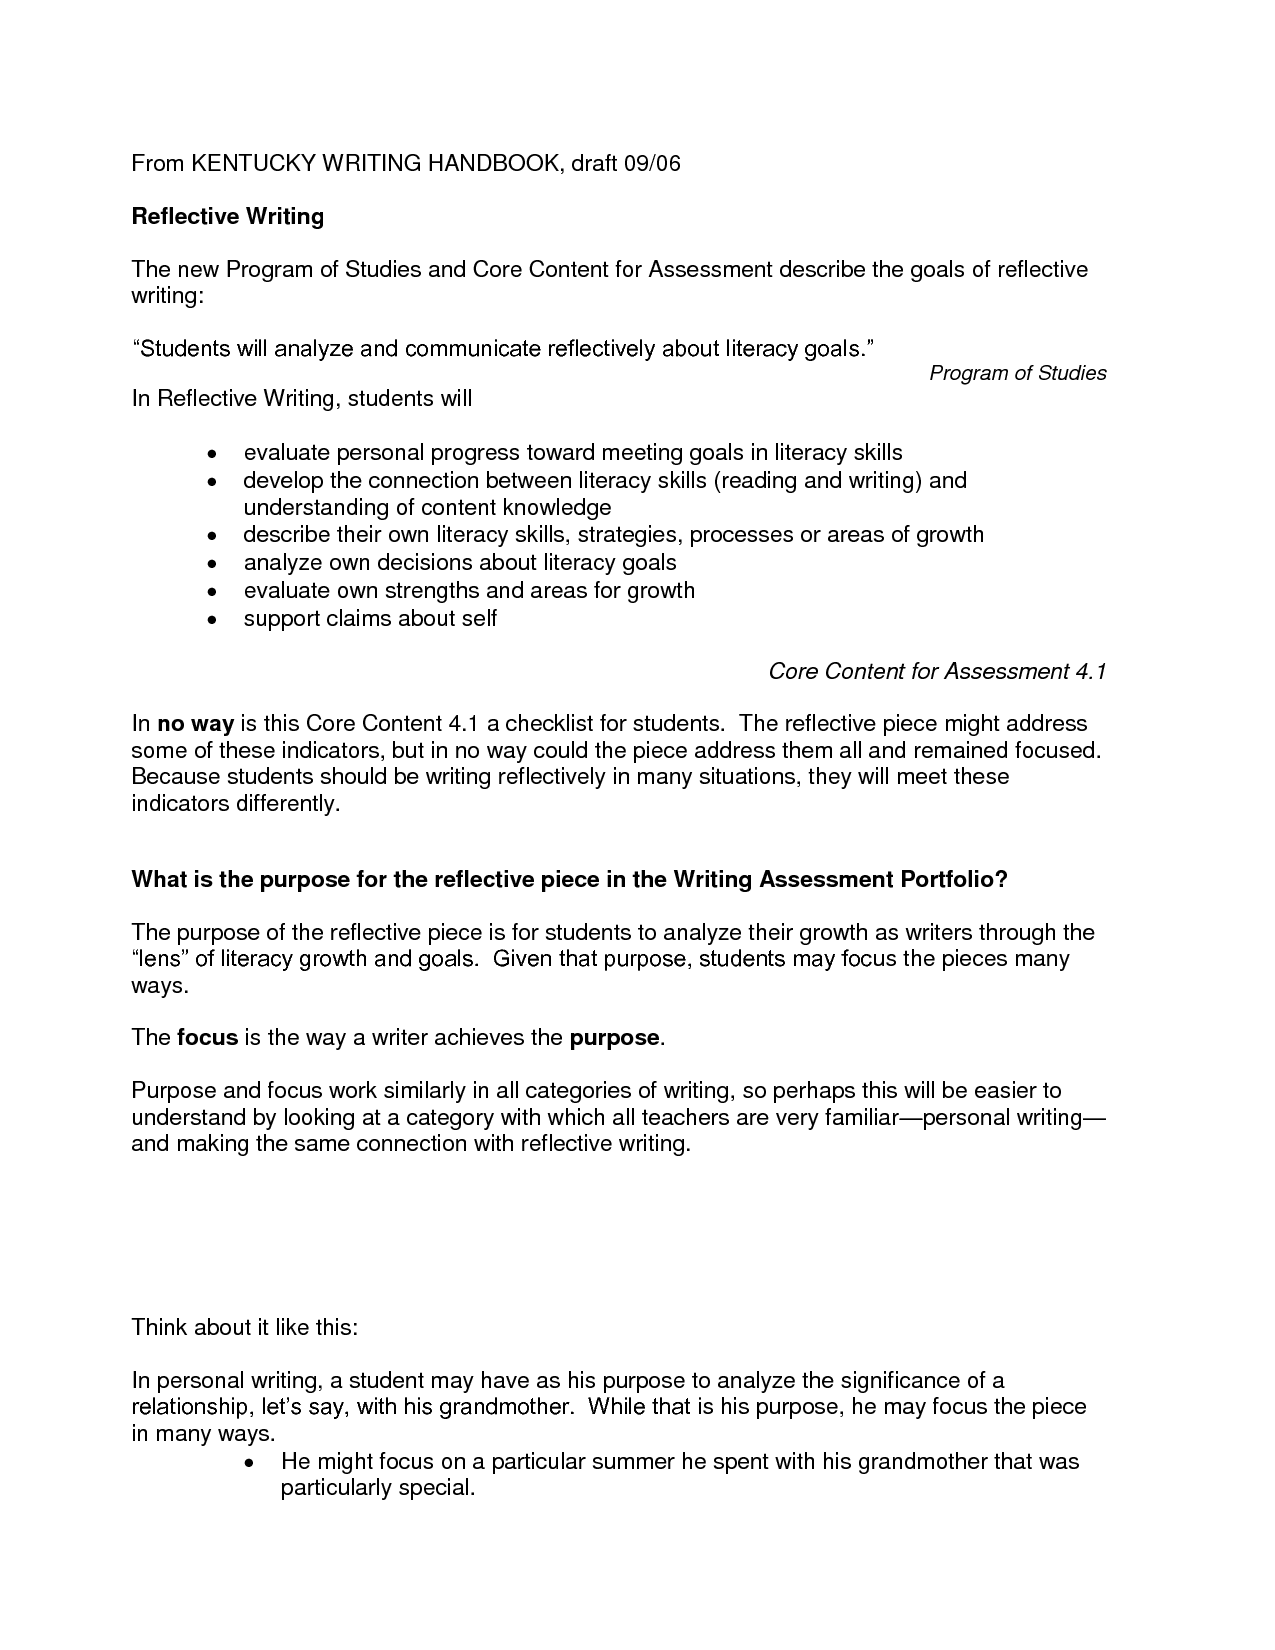 Buy a reflective essay example nursing